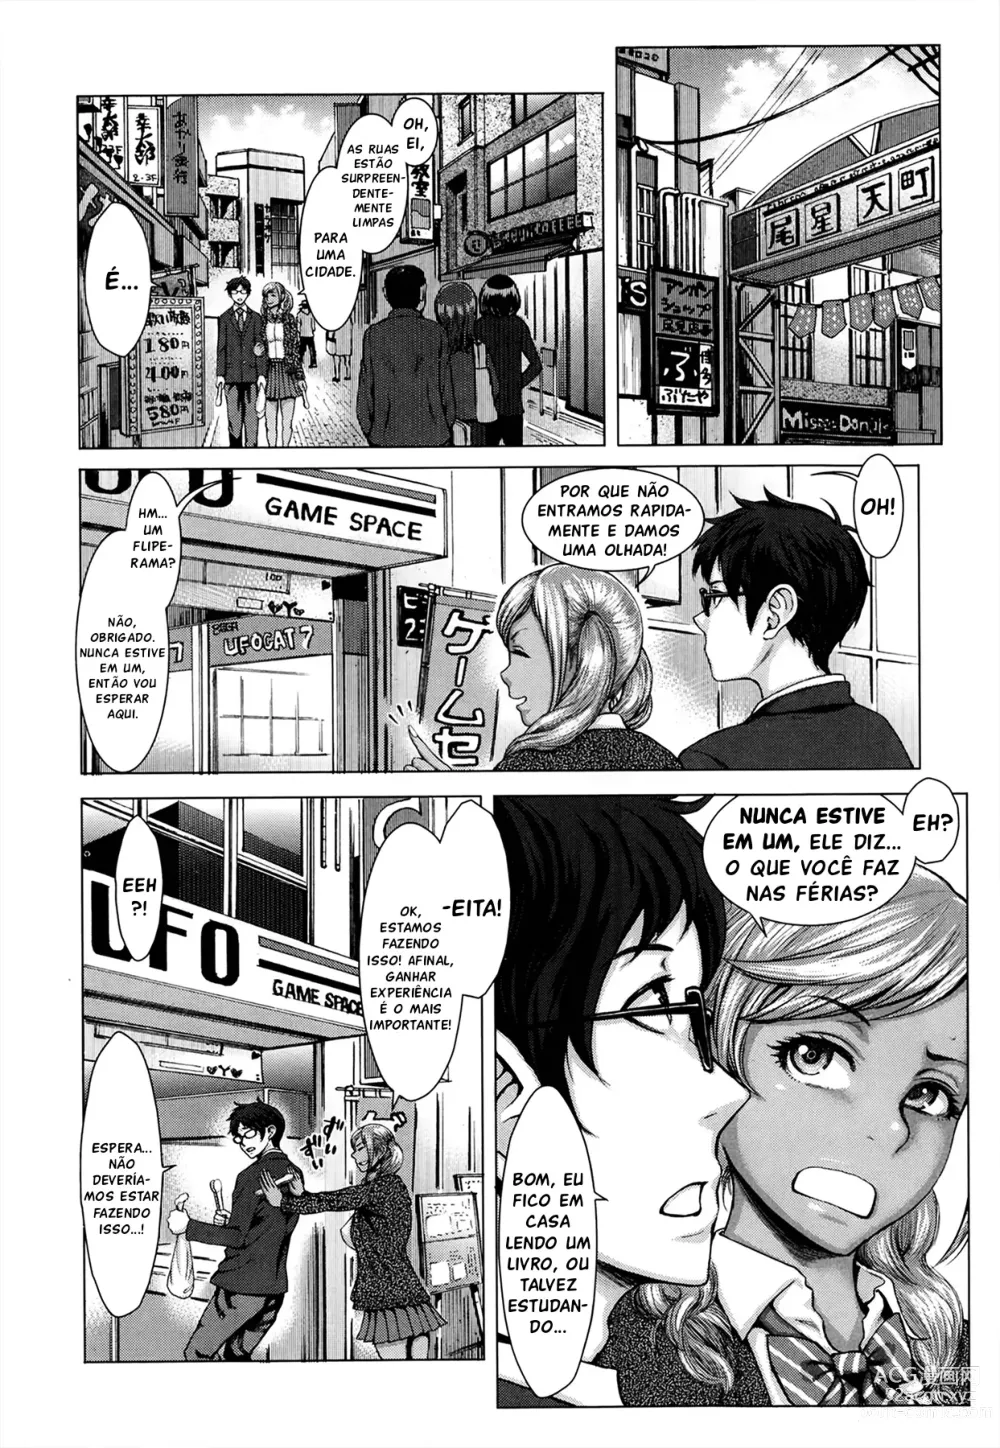 Page 4 of manga Serviço Comunitário Negro